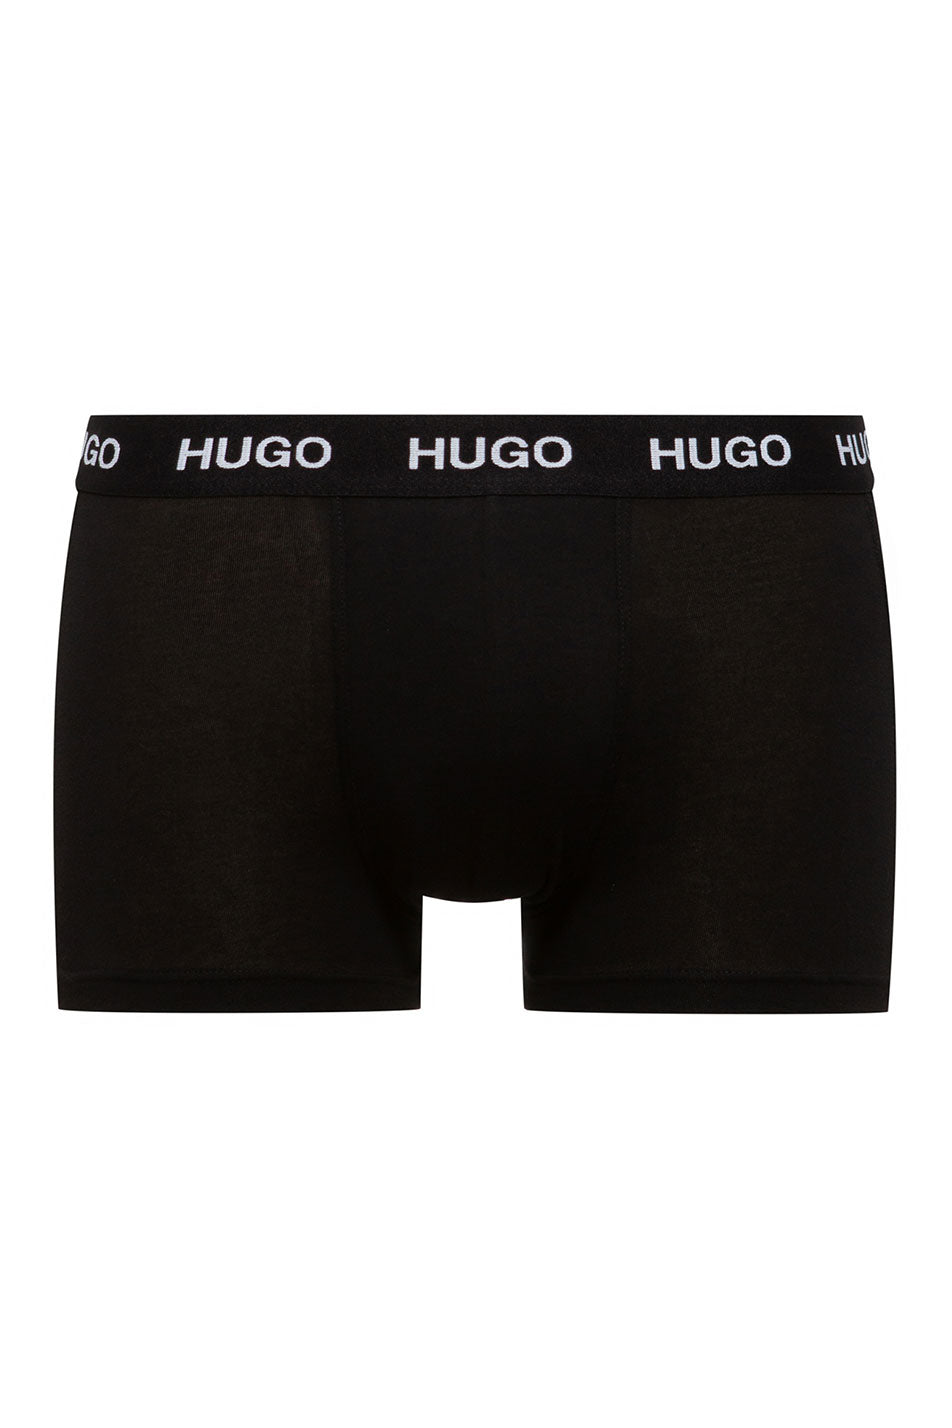 HUGO Men's Trunk 3 Pack